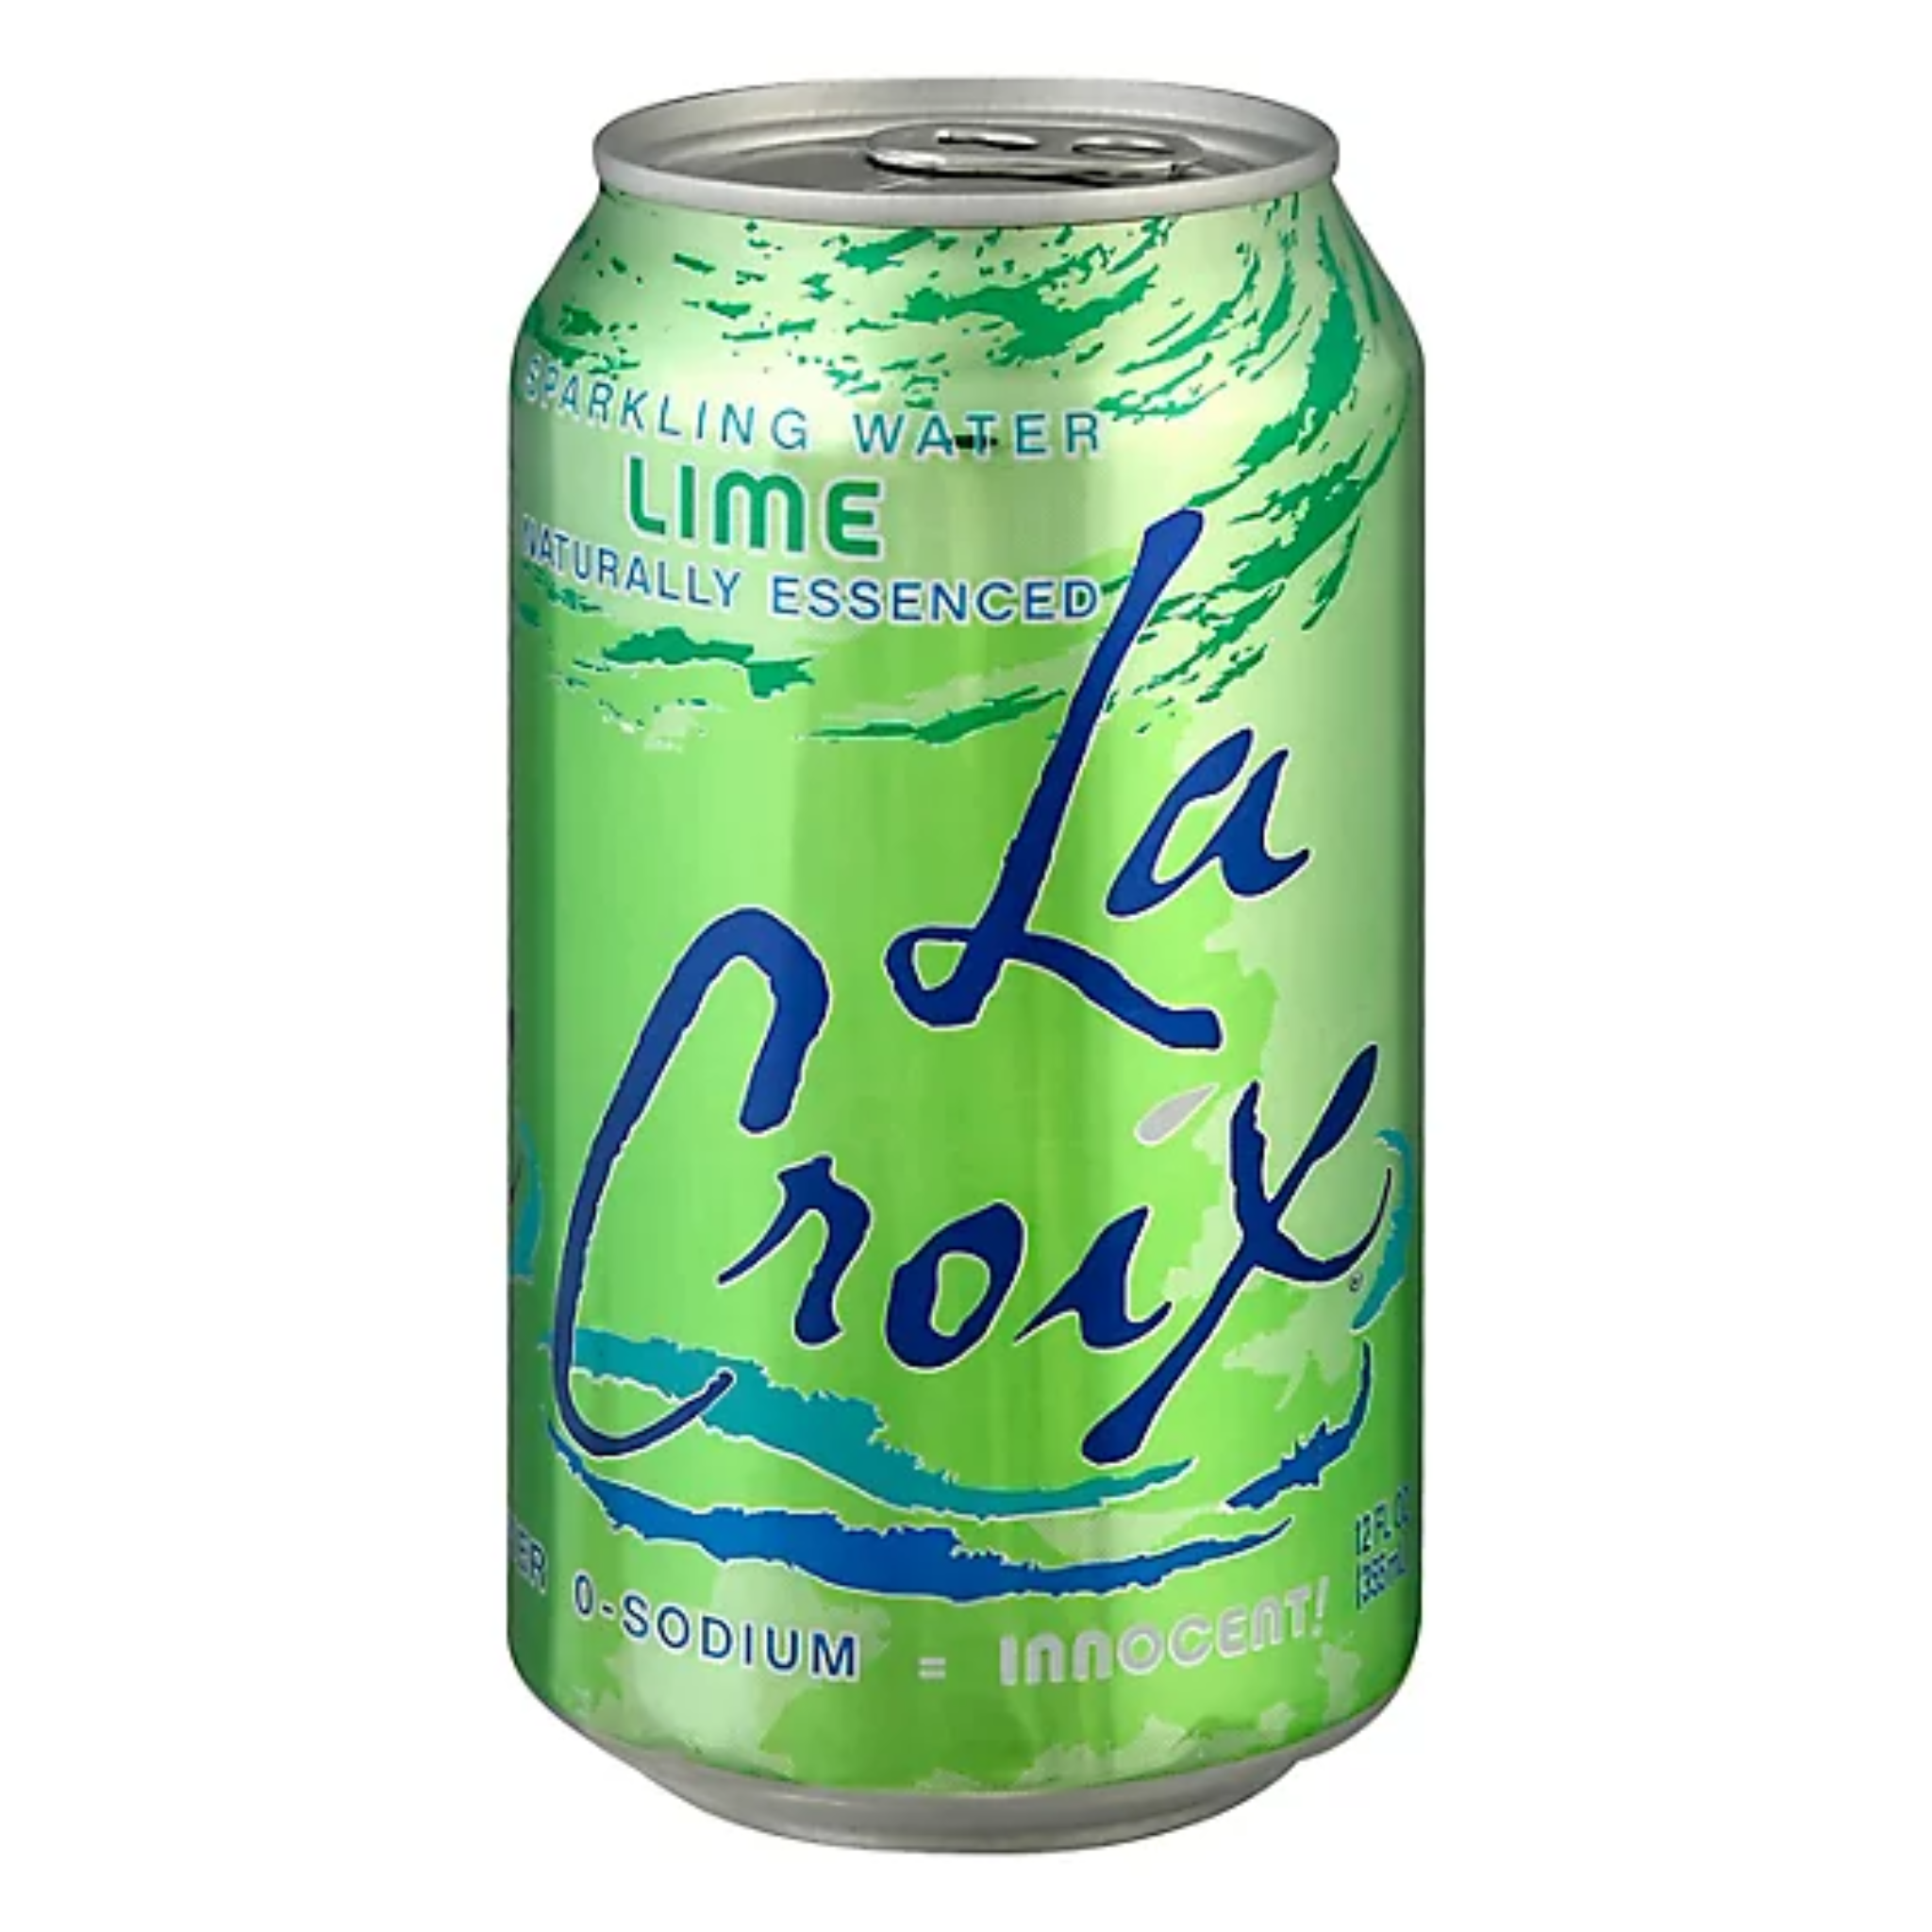 LaCroix Lime